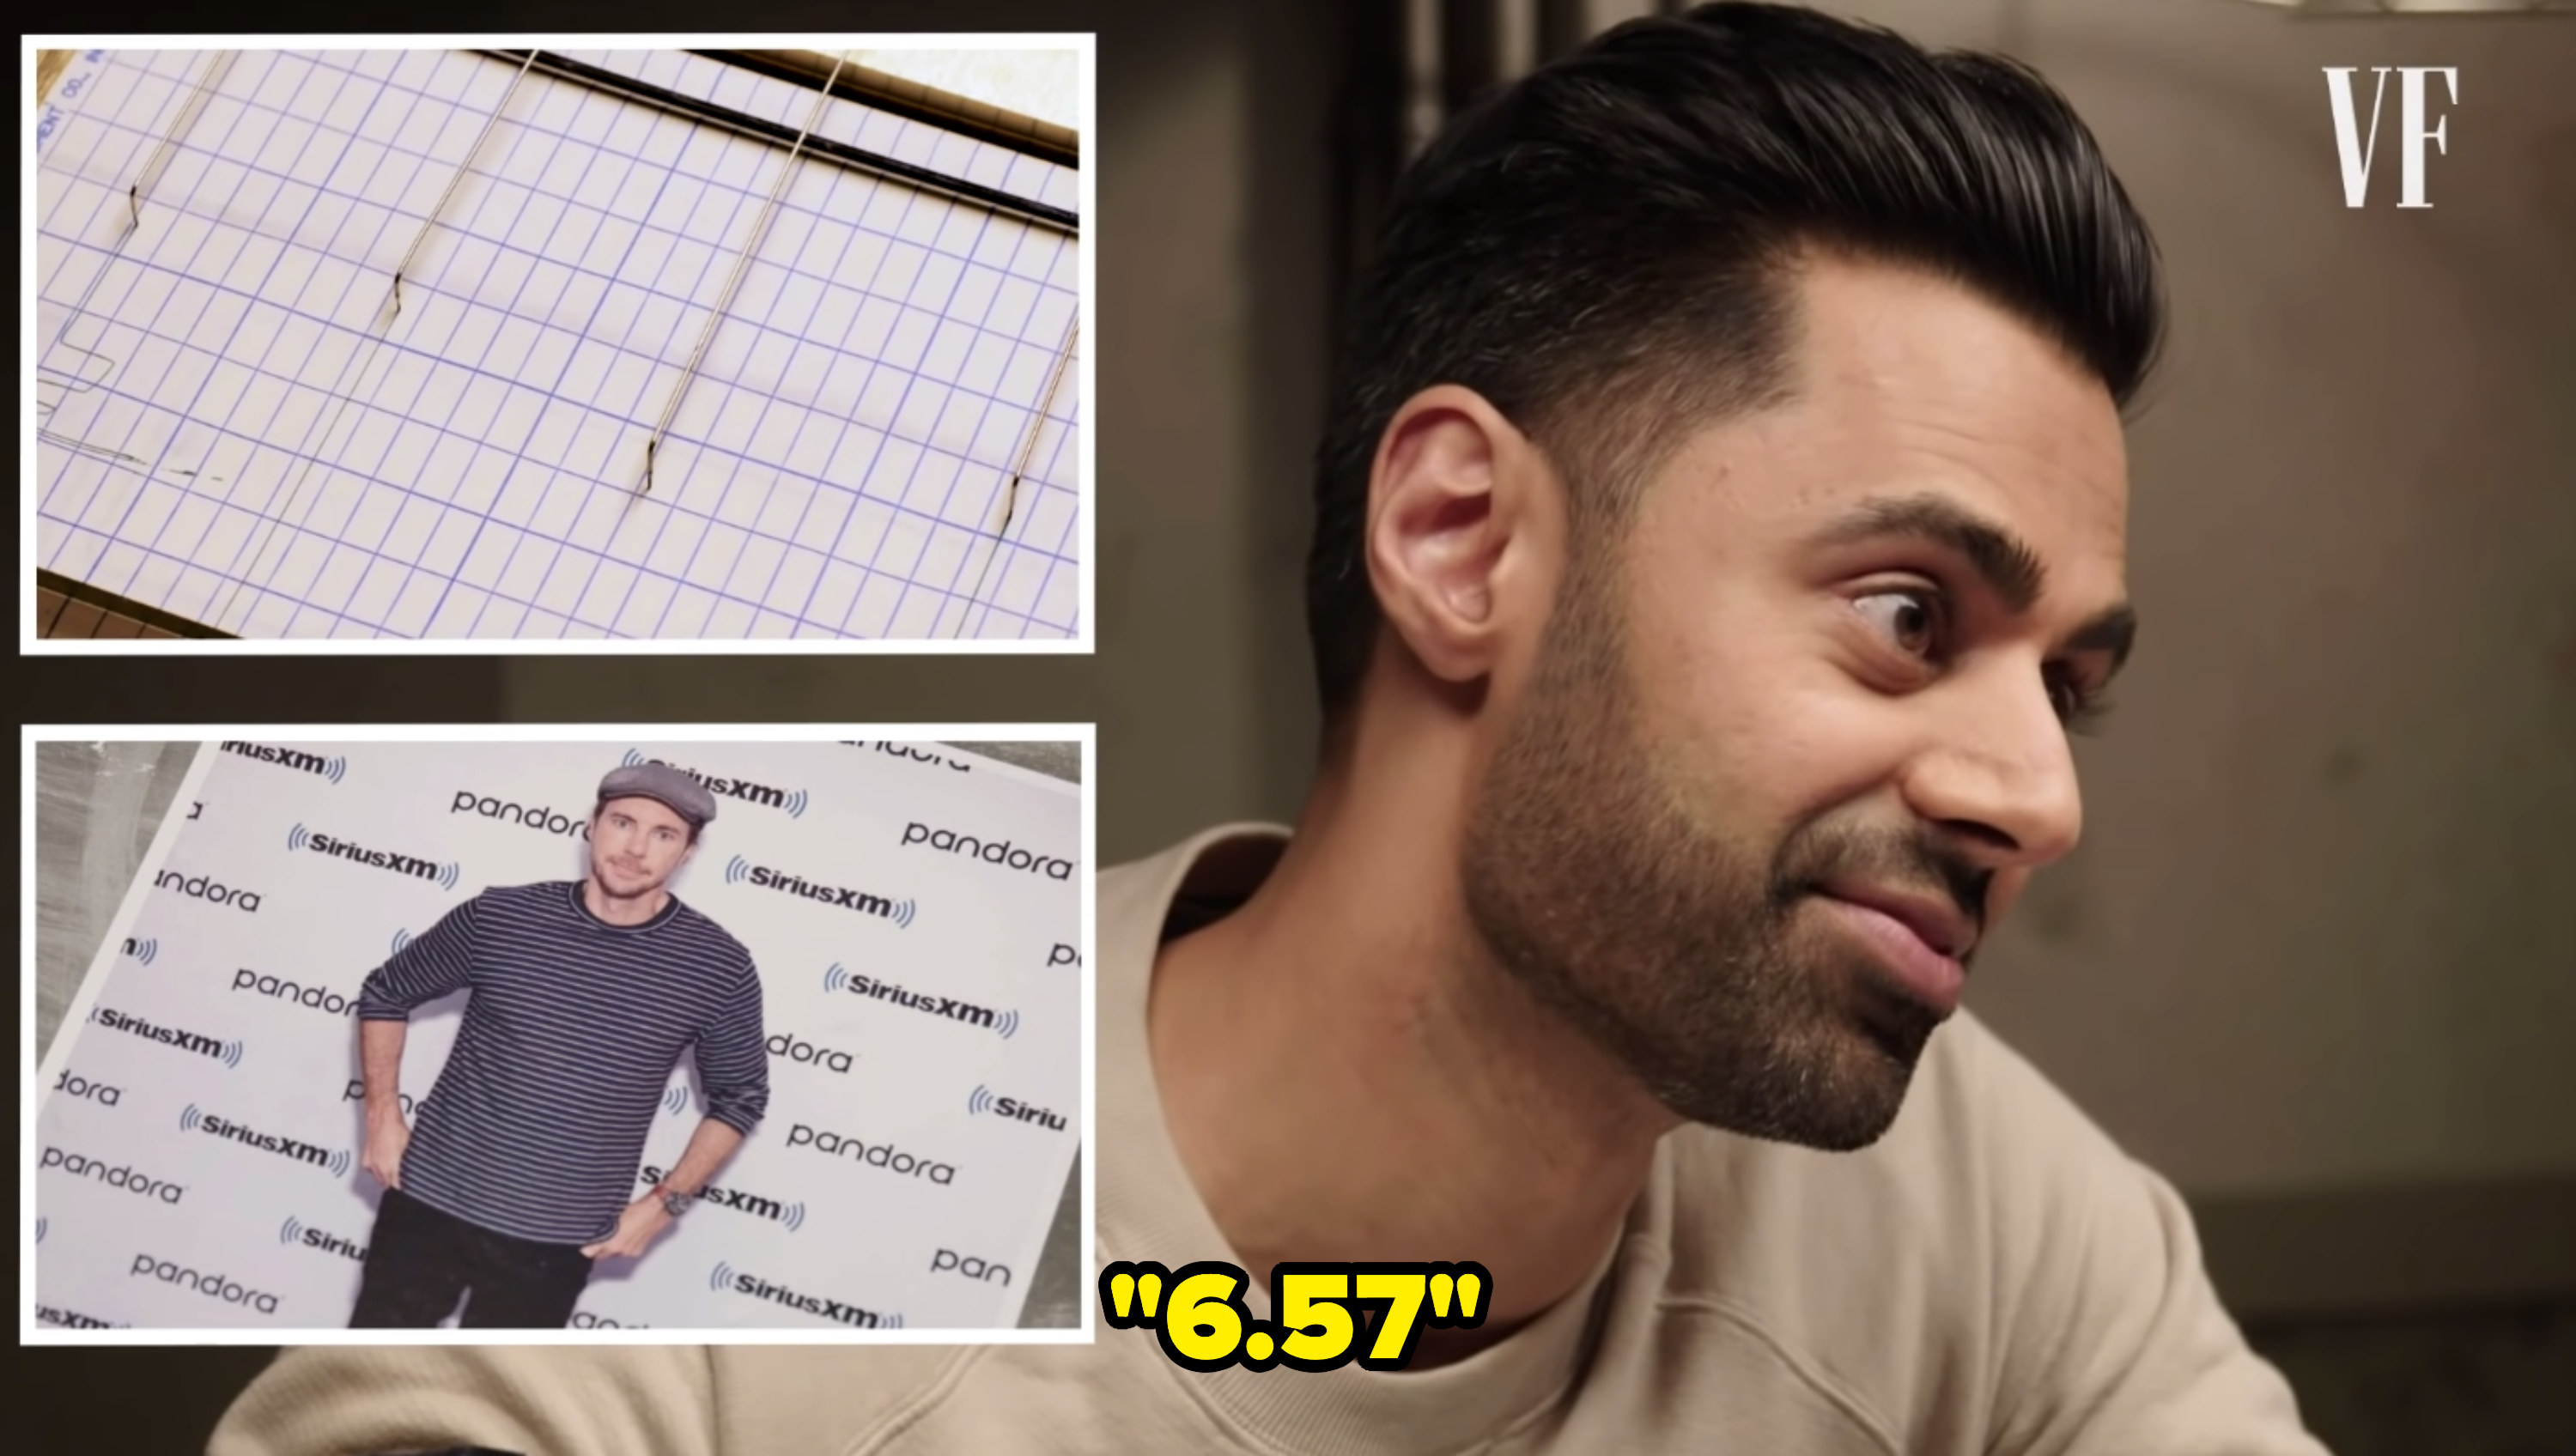 Hasan Minhaj takes a a lie detector test and rates Dax a 6.57